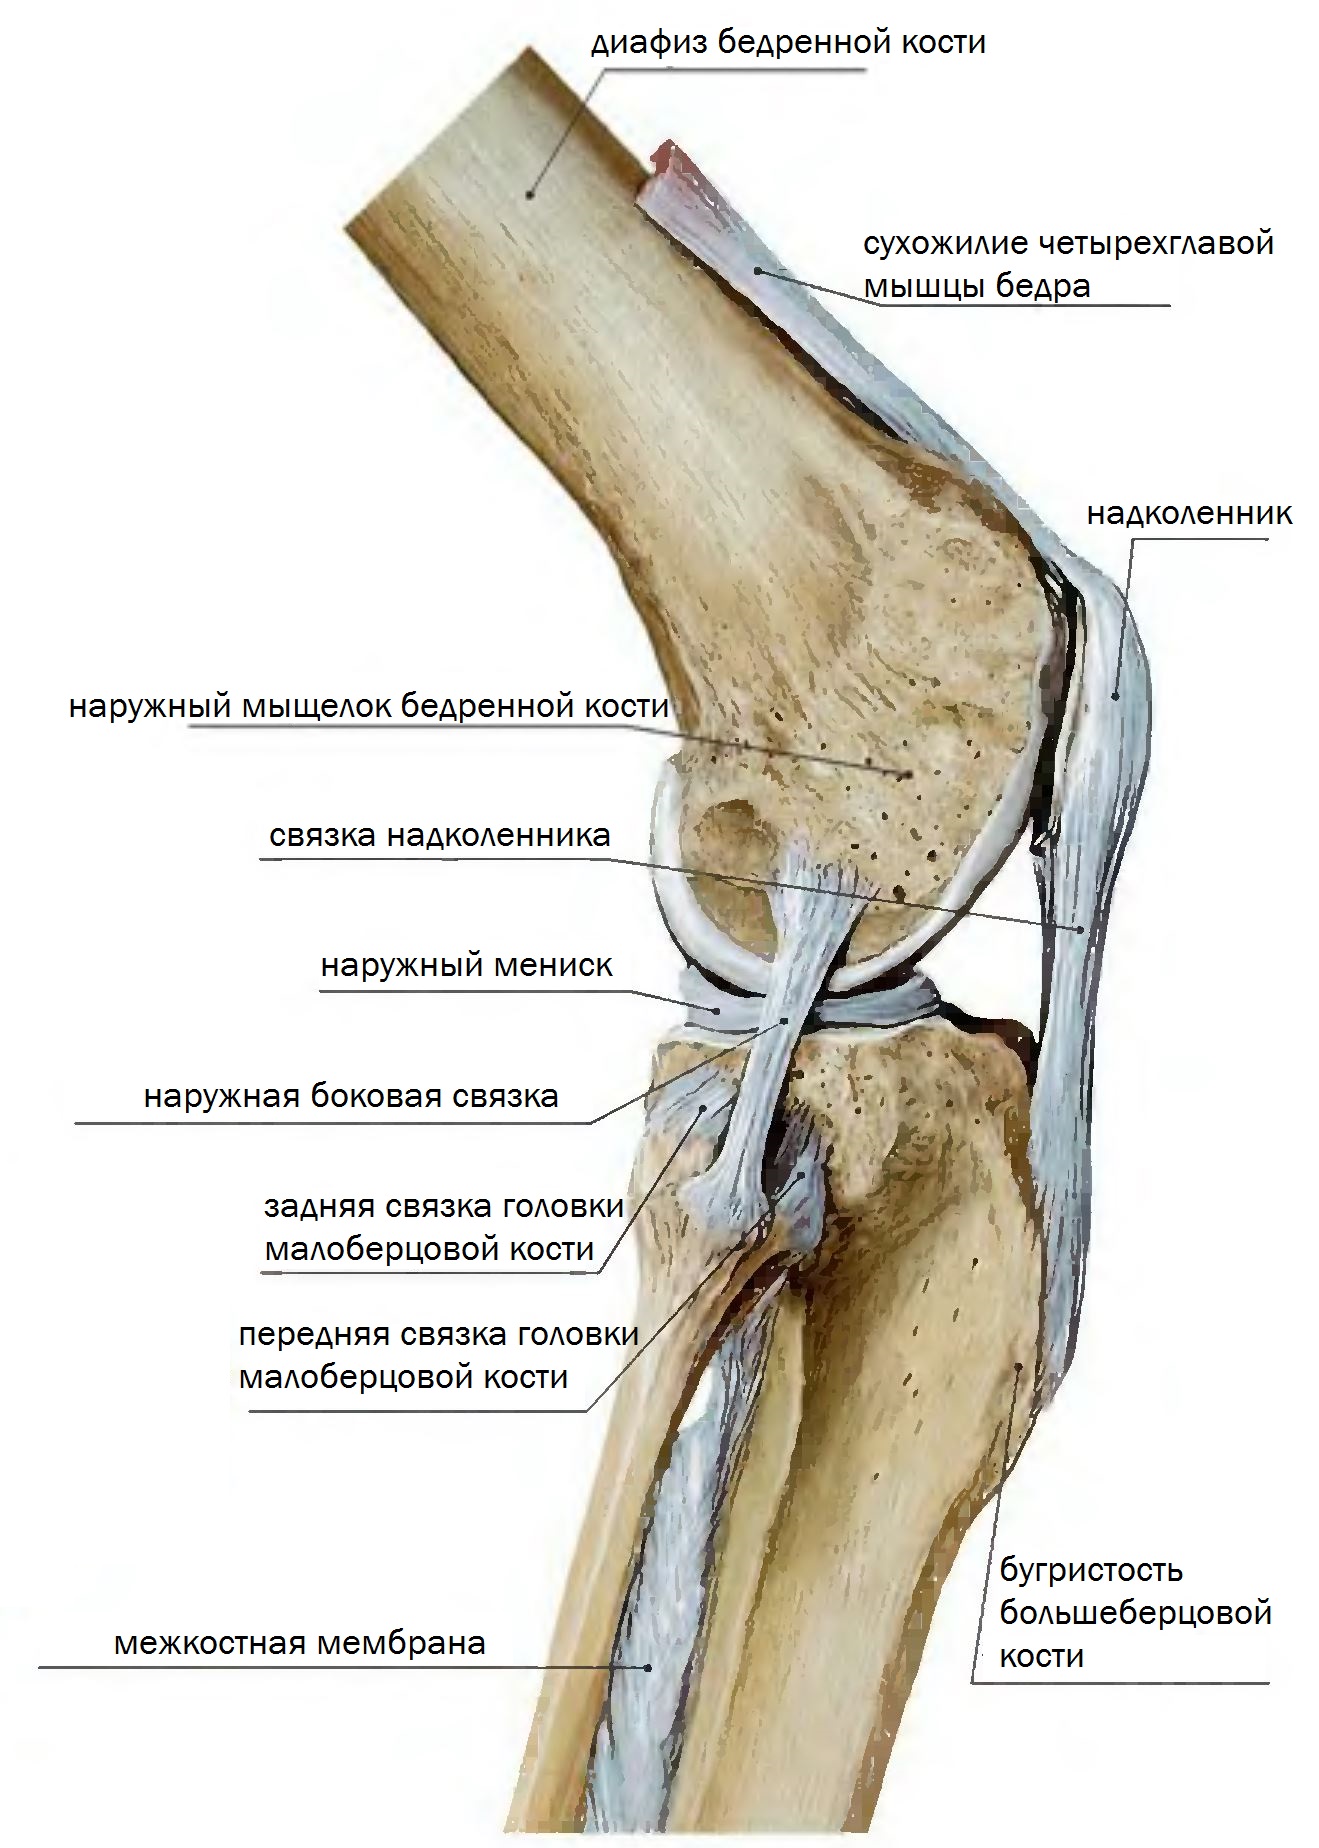 Внутренний мыщелок. Мыщелок коленного сустава большеберцовой кости. Коленный сустав анатомия связки надколенника. Коленный сустав малоберцовая кость. Передняя связка головки малоберцовой кости.